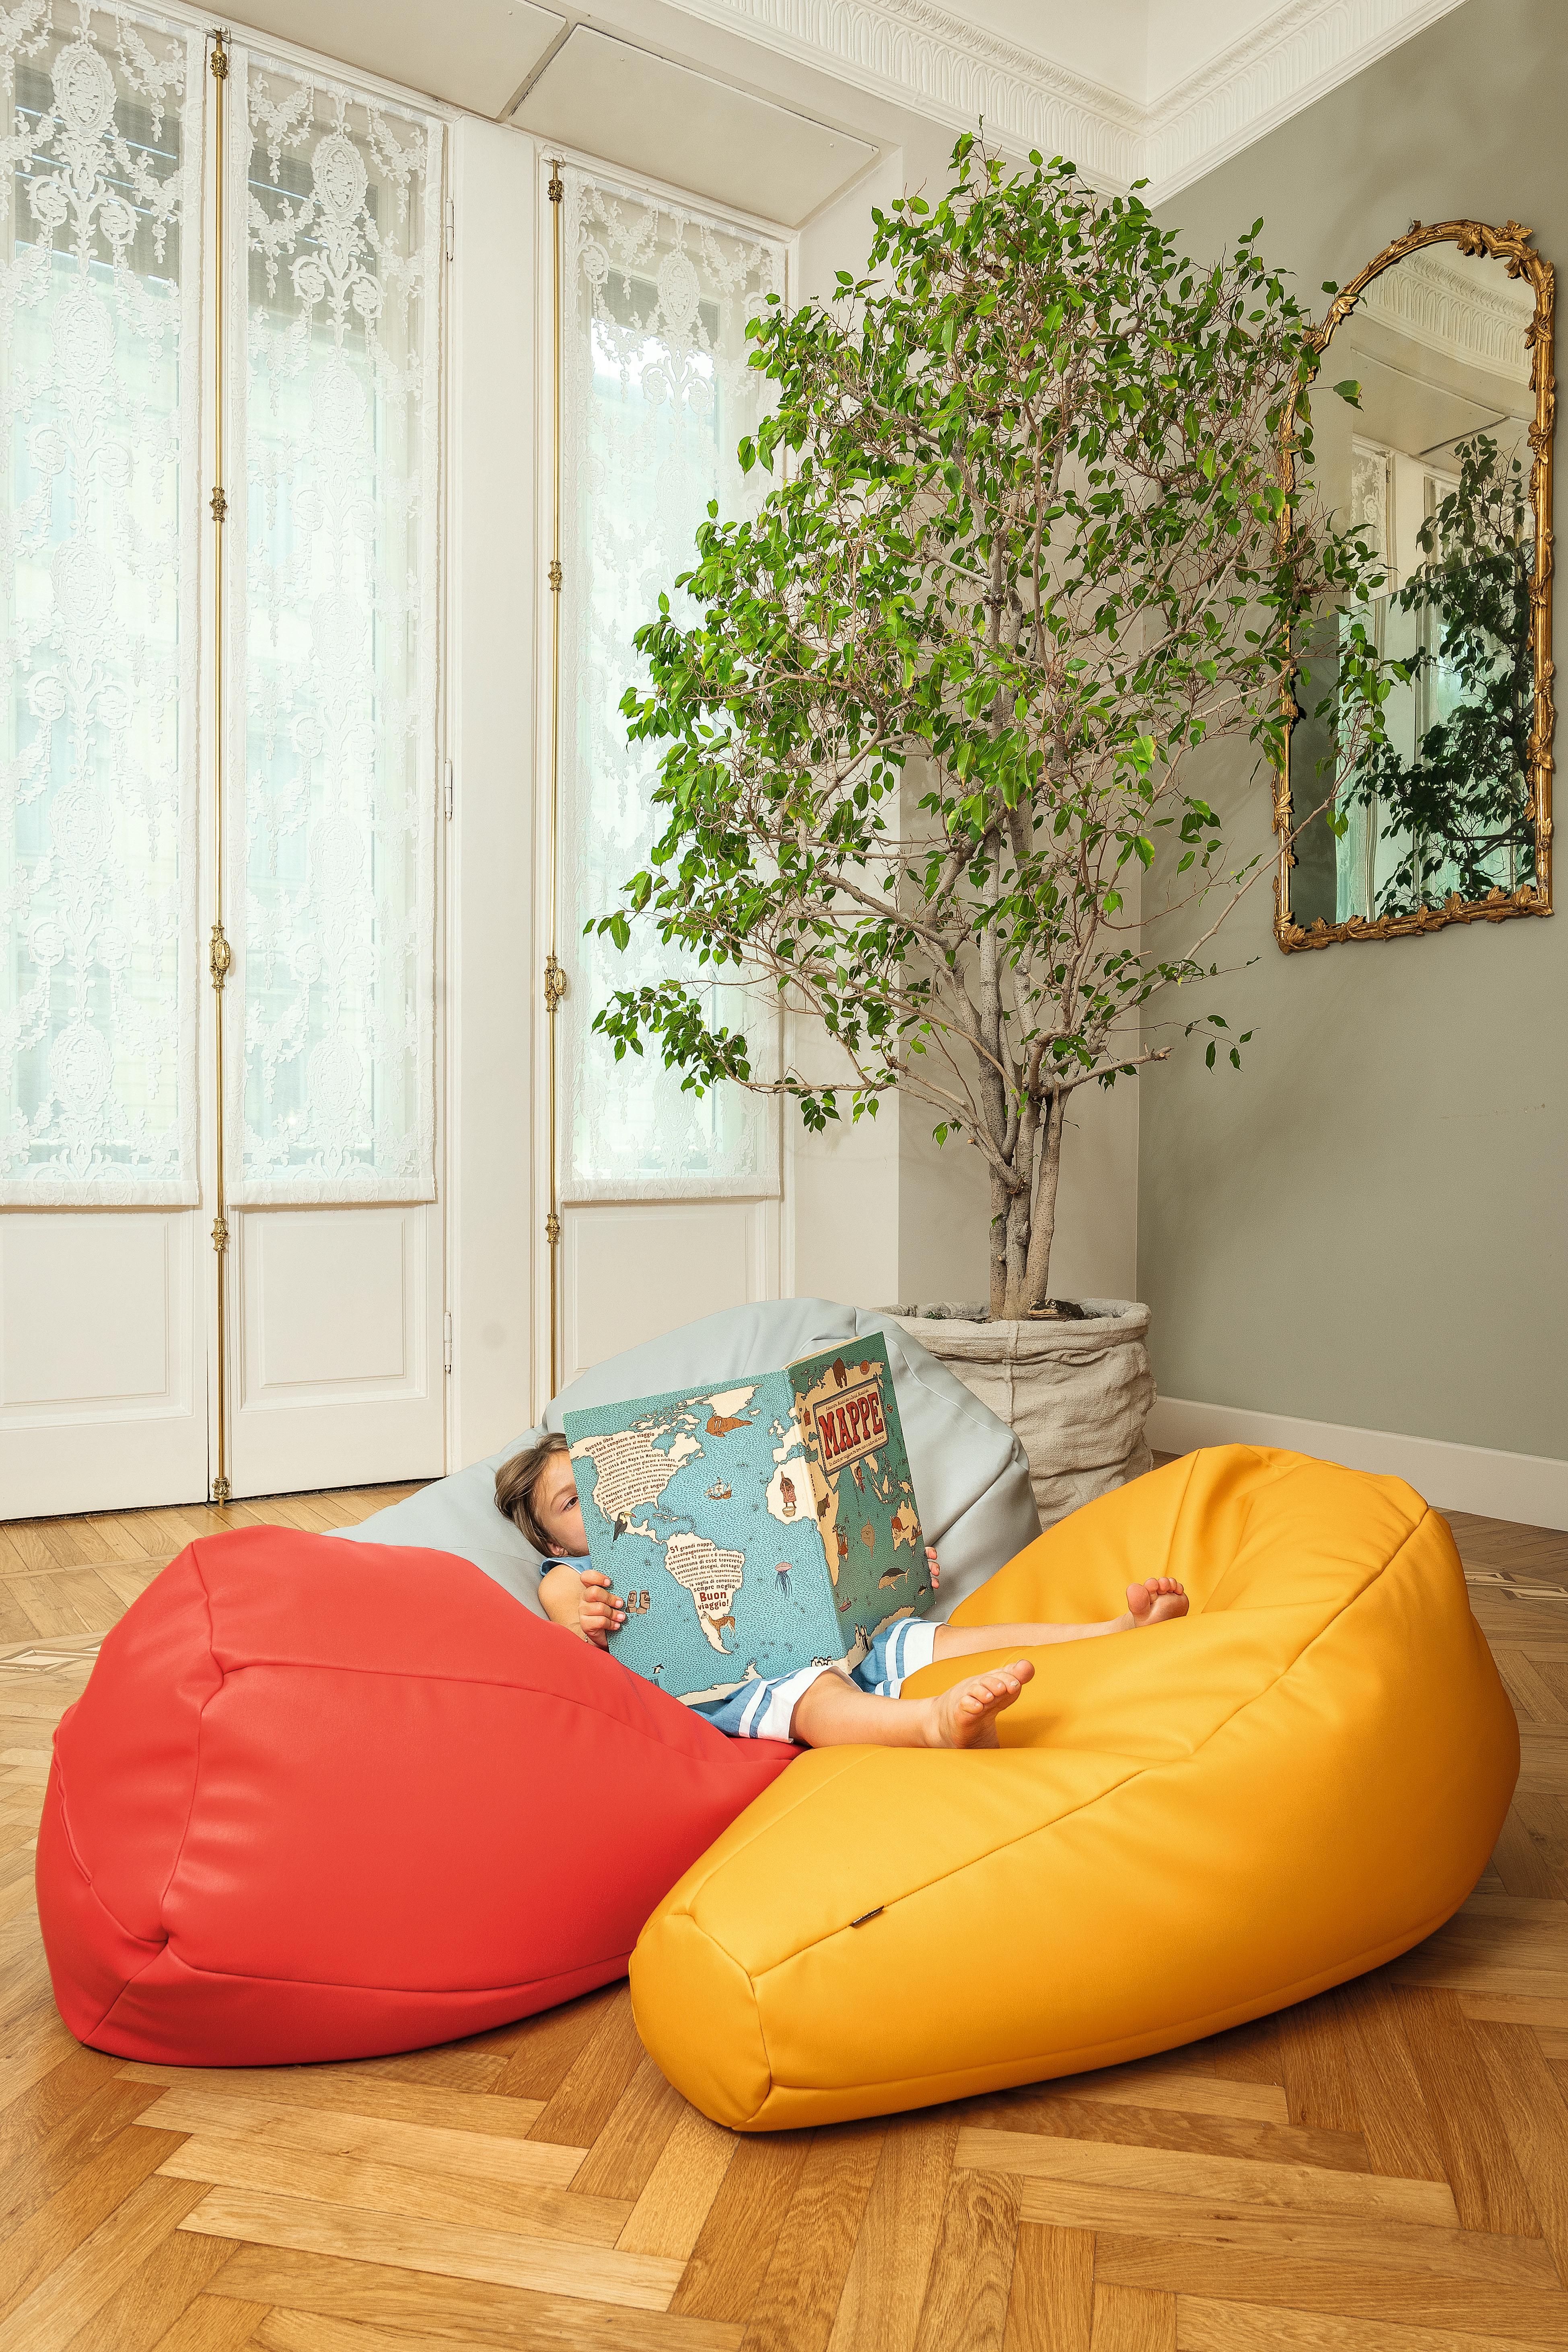 Upholstery Zanotta Medium Sacco in Orange Vip Fabric by Gatti, Paolini, Teodoro For Sale